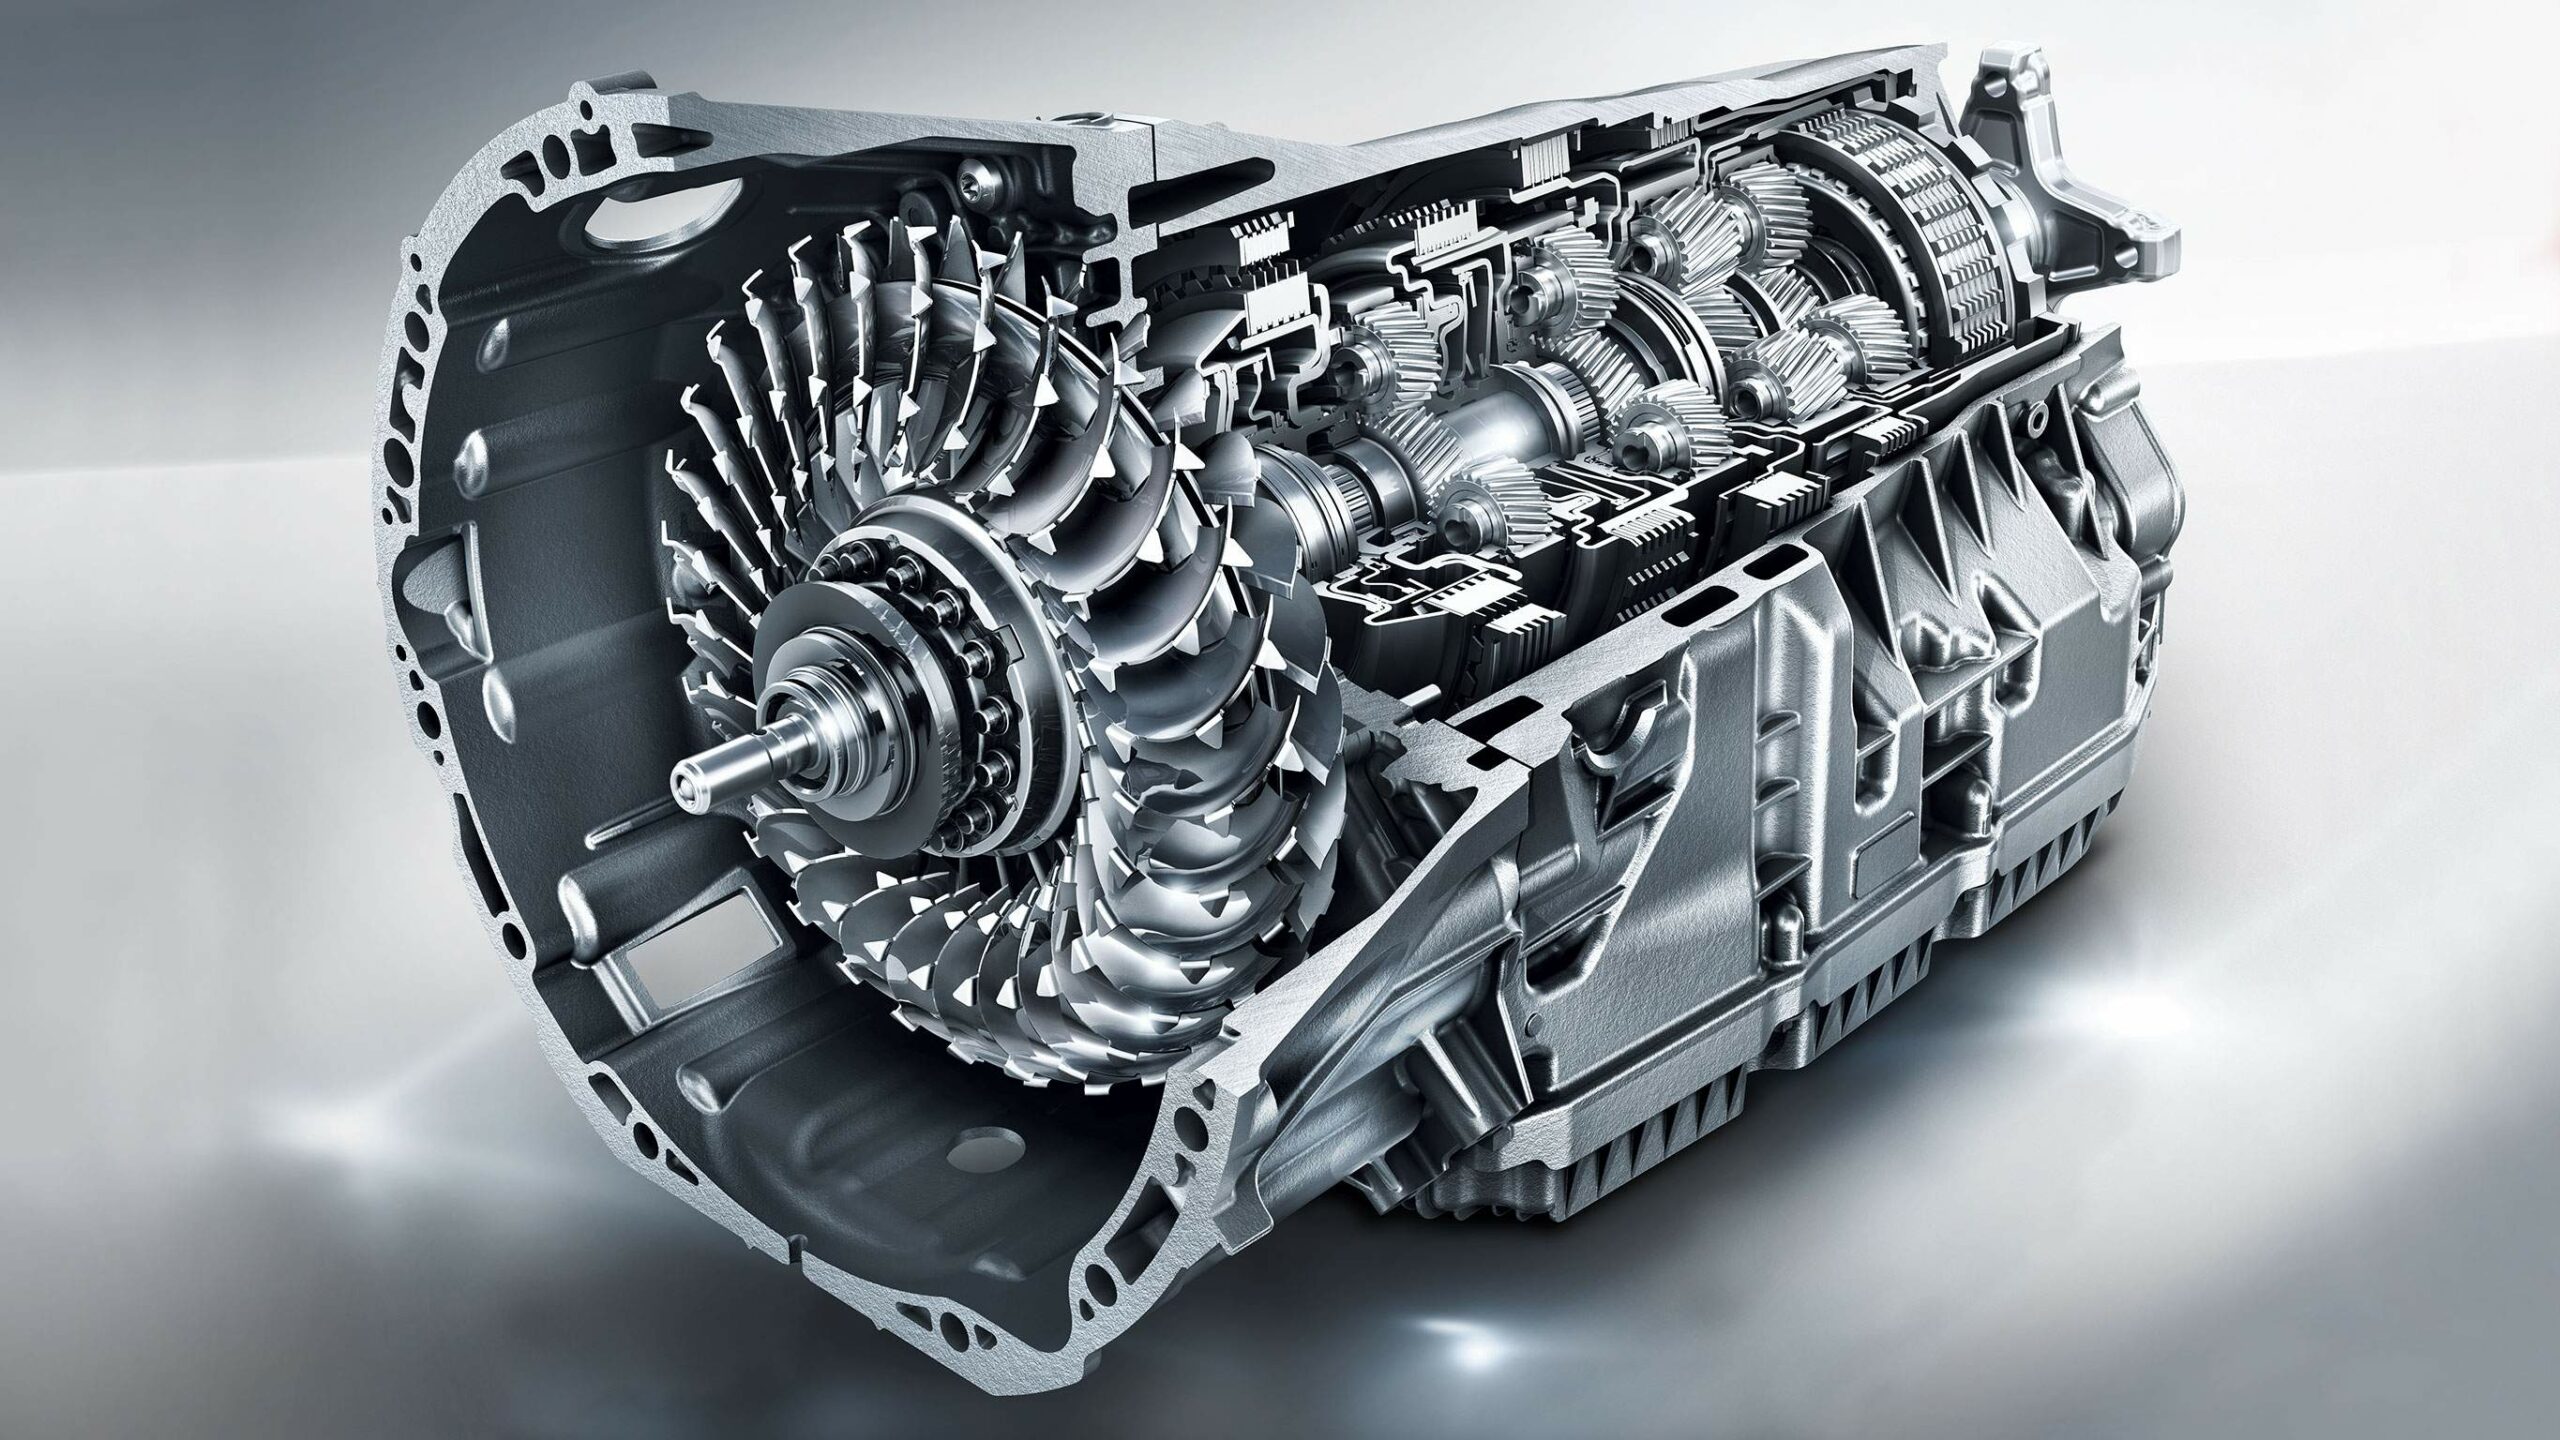 El potente motor 9G Tronic de la potente Clase E Sedan de Mercedes-Benz